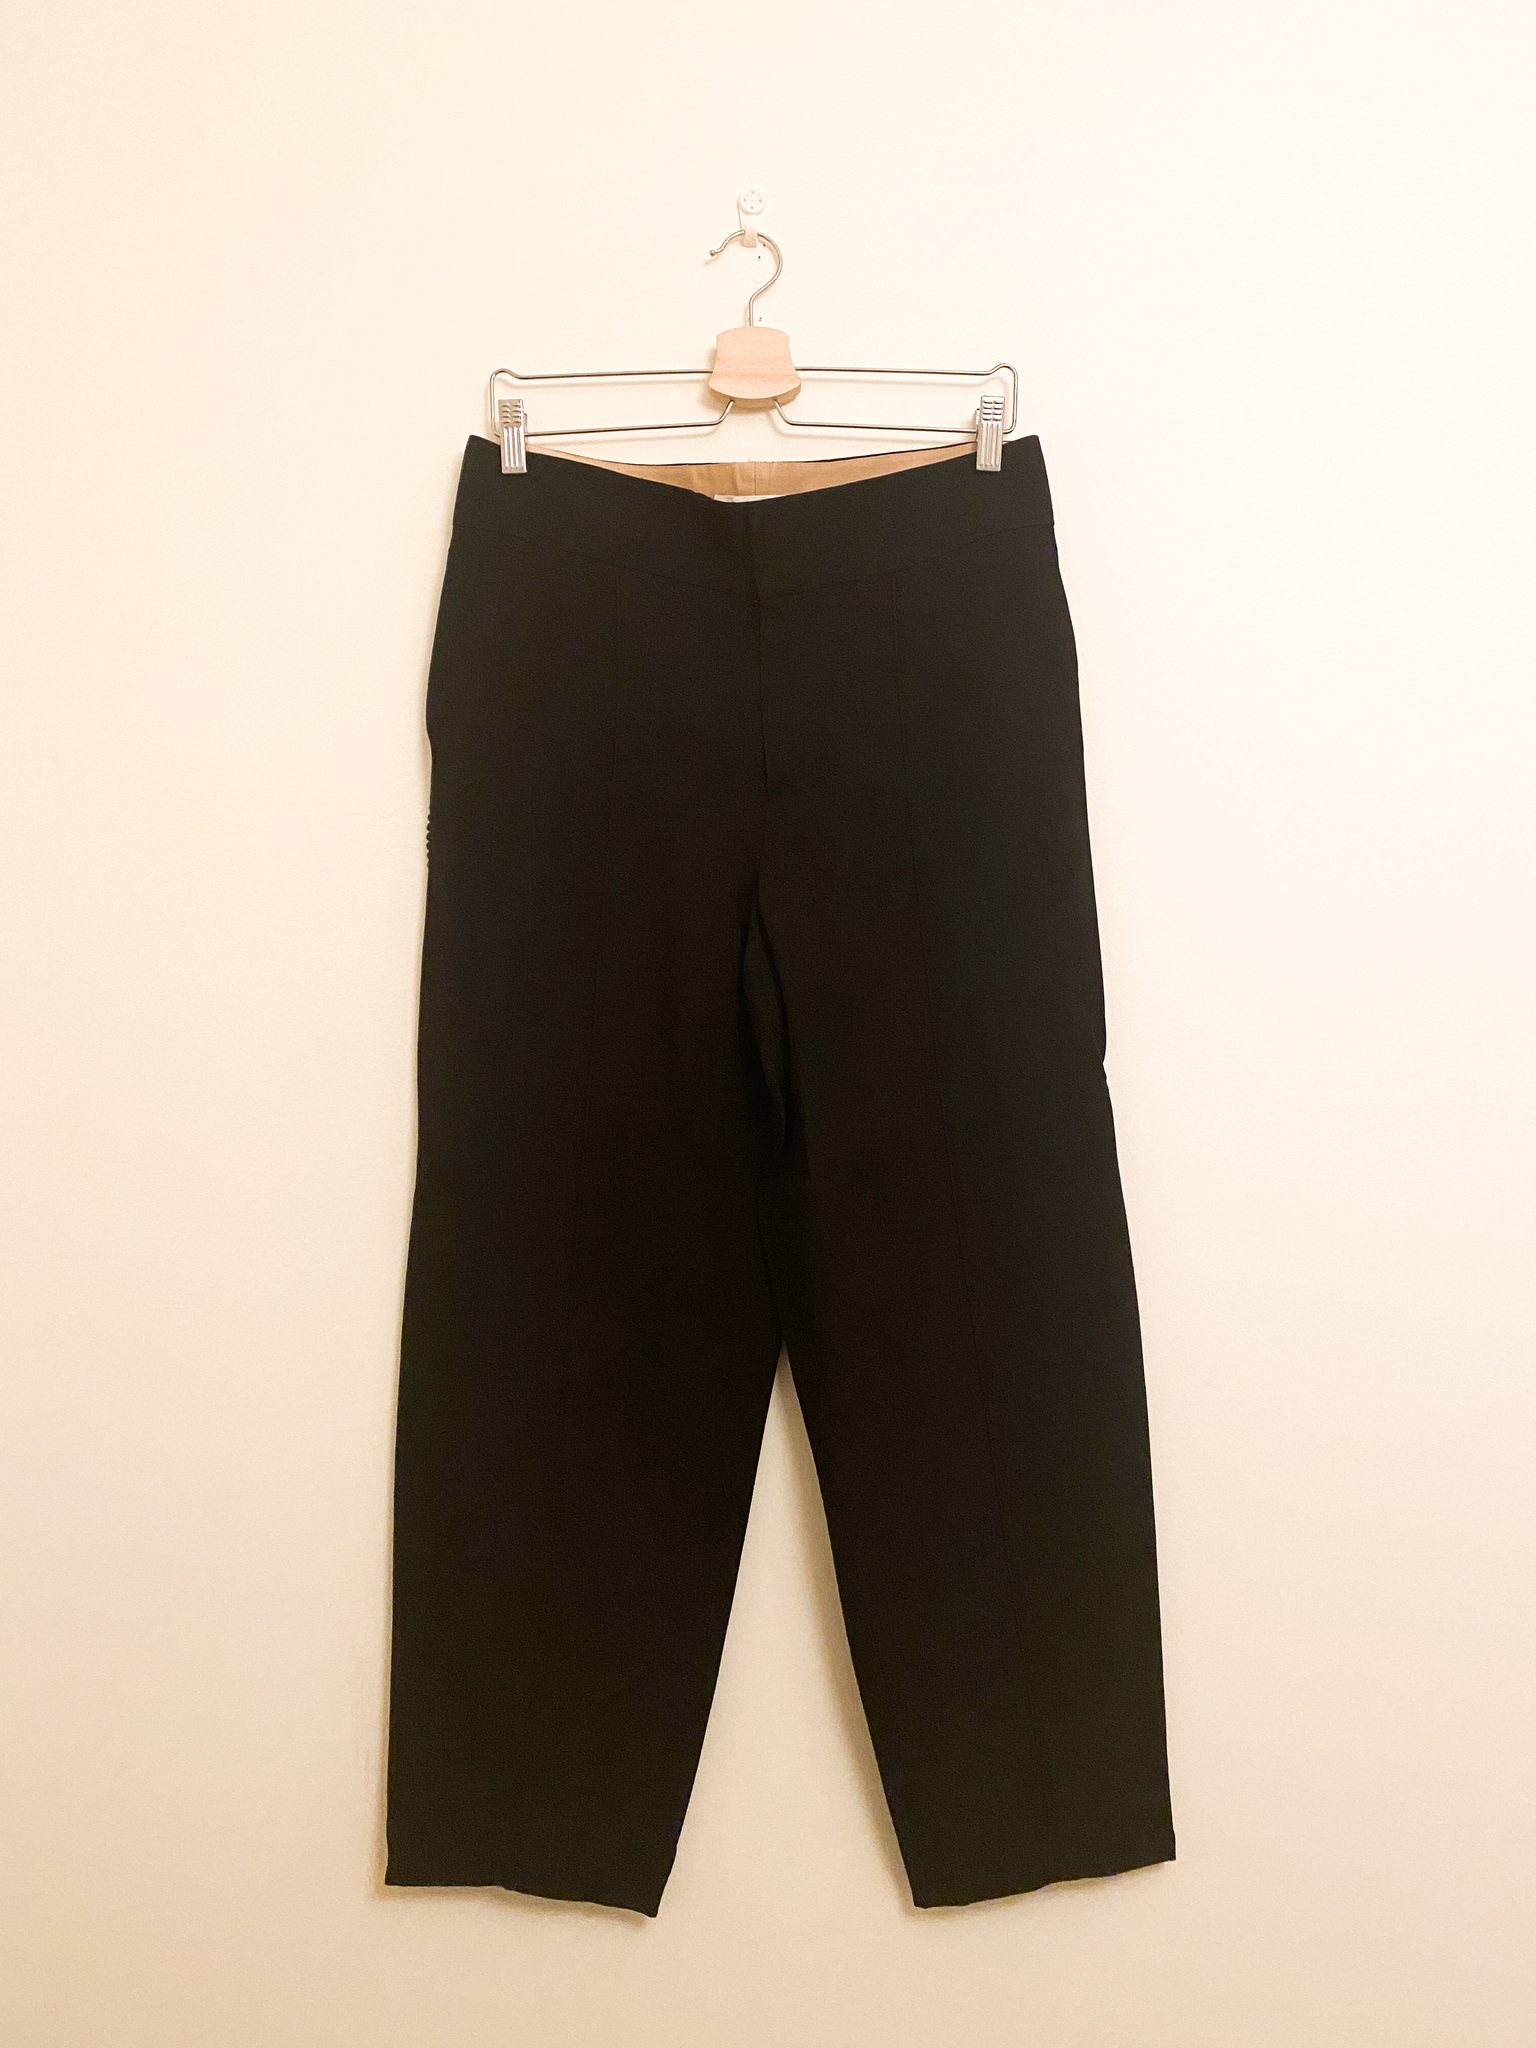 CHLOÉ Suit Pants (FR40/EU38)